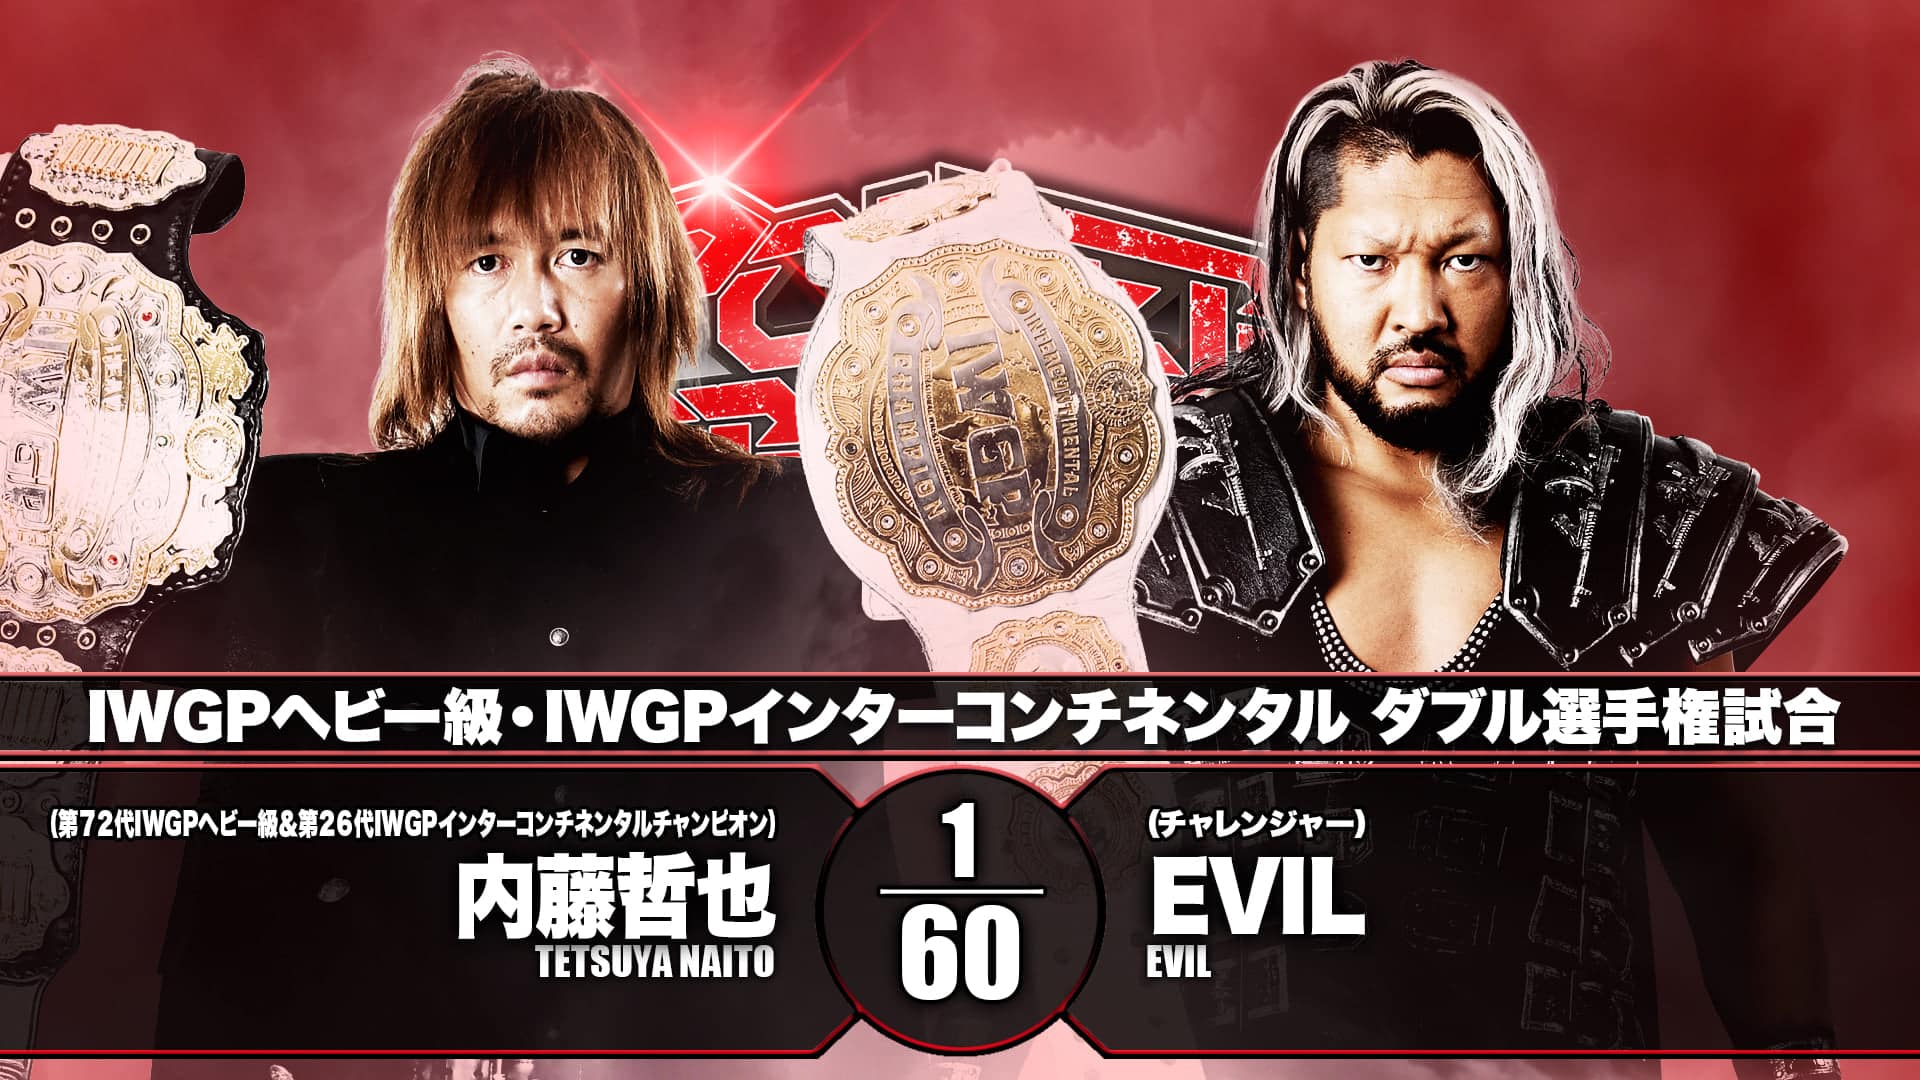 NJPW Power Struggle Preview WrestleJoy